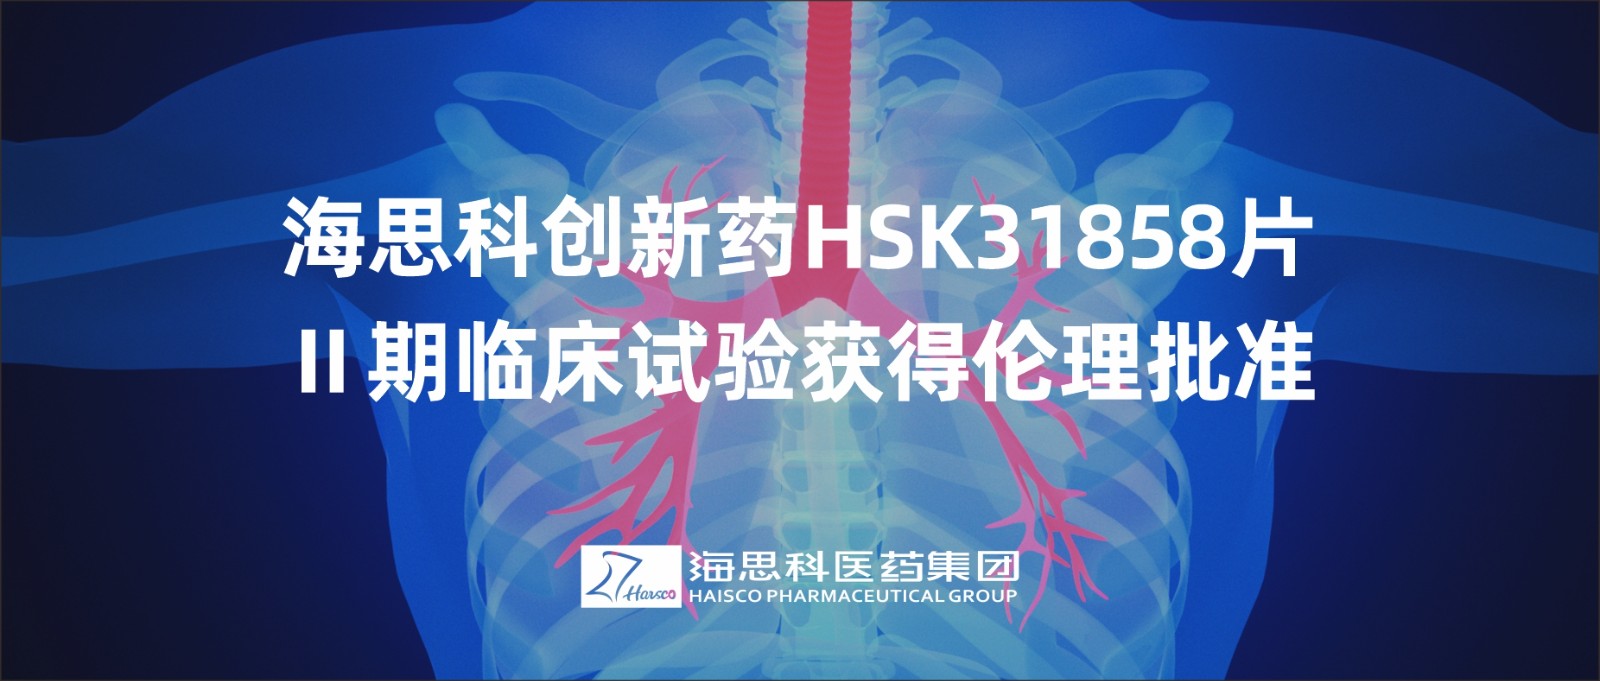 恒峰官网g22创新药HSK31858片Ⅱ期临床试验获得伦理批准